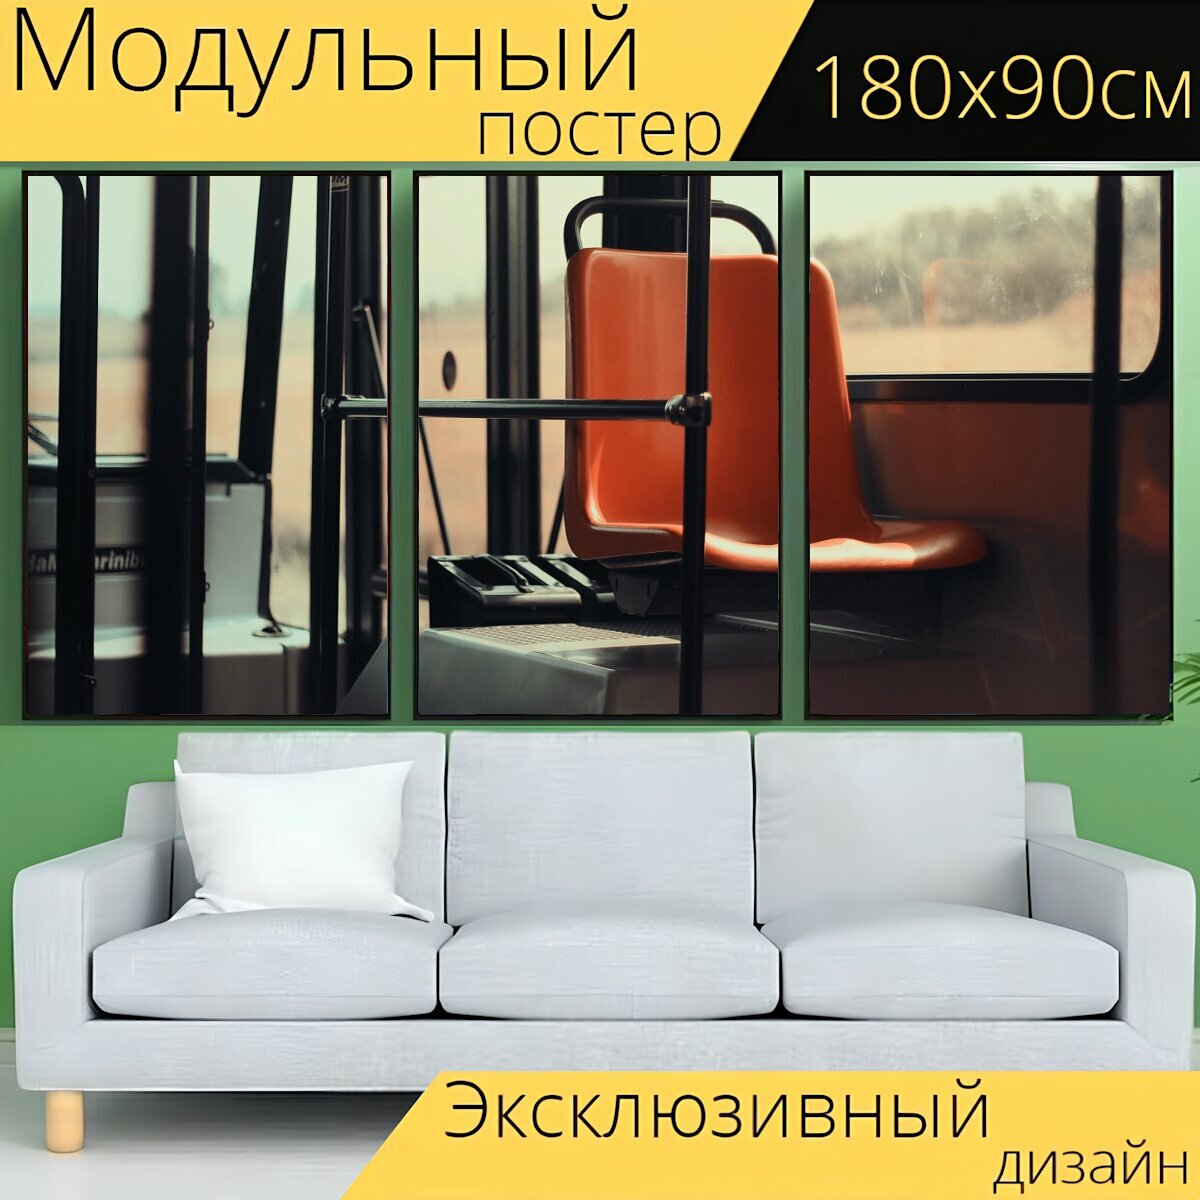 Модульный постер "Сиденье, общественный транспорт, автобус" 180 x 90 см. для интерьера